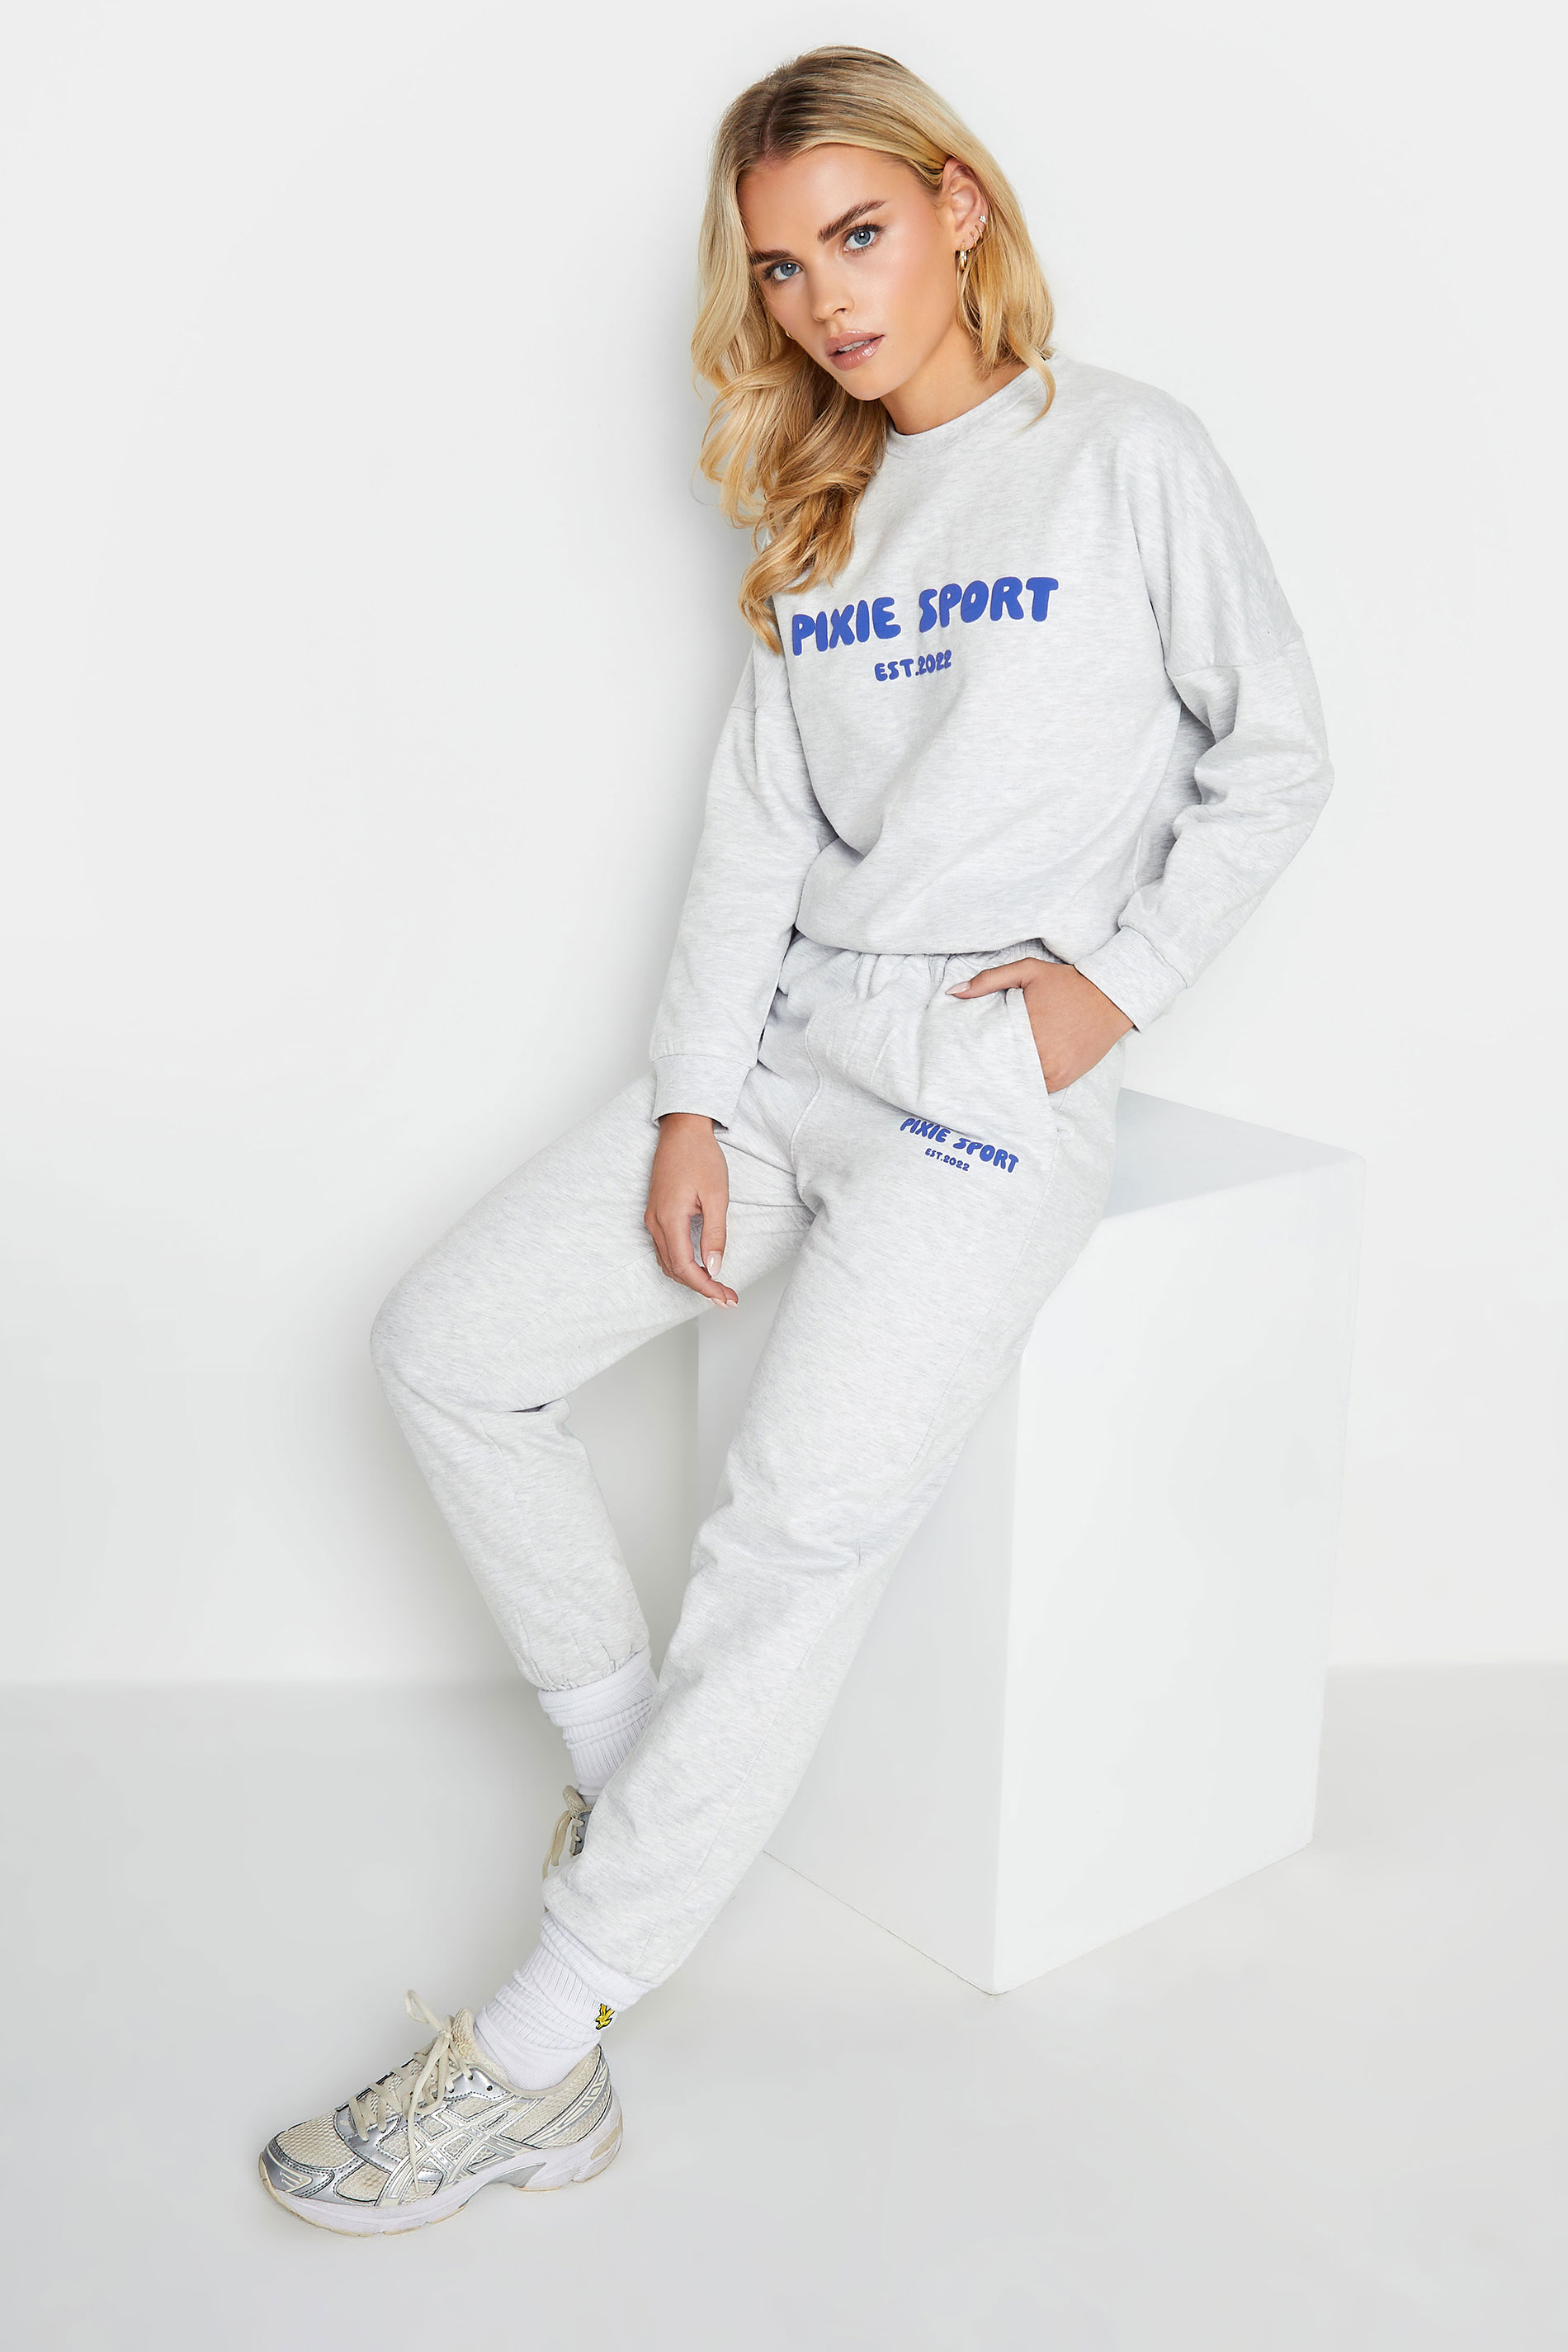 PixieGirl Petite Womens Grey 'Pixie Sport' Slogan Sweatshirt & Jogger Set | PixieGirl 1